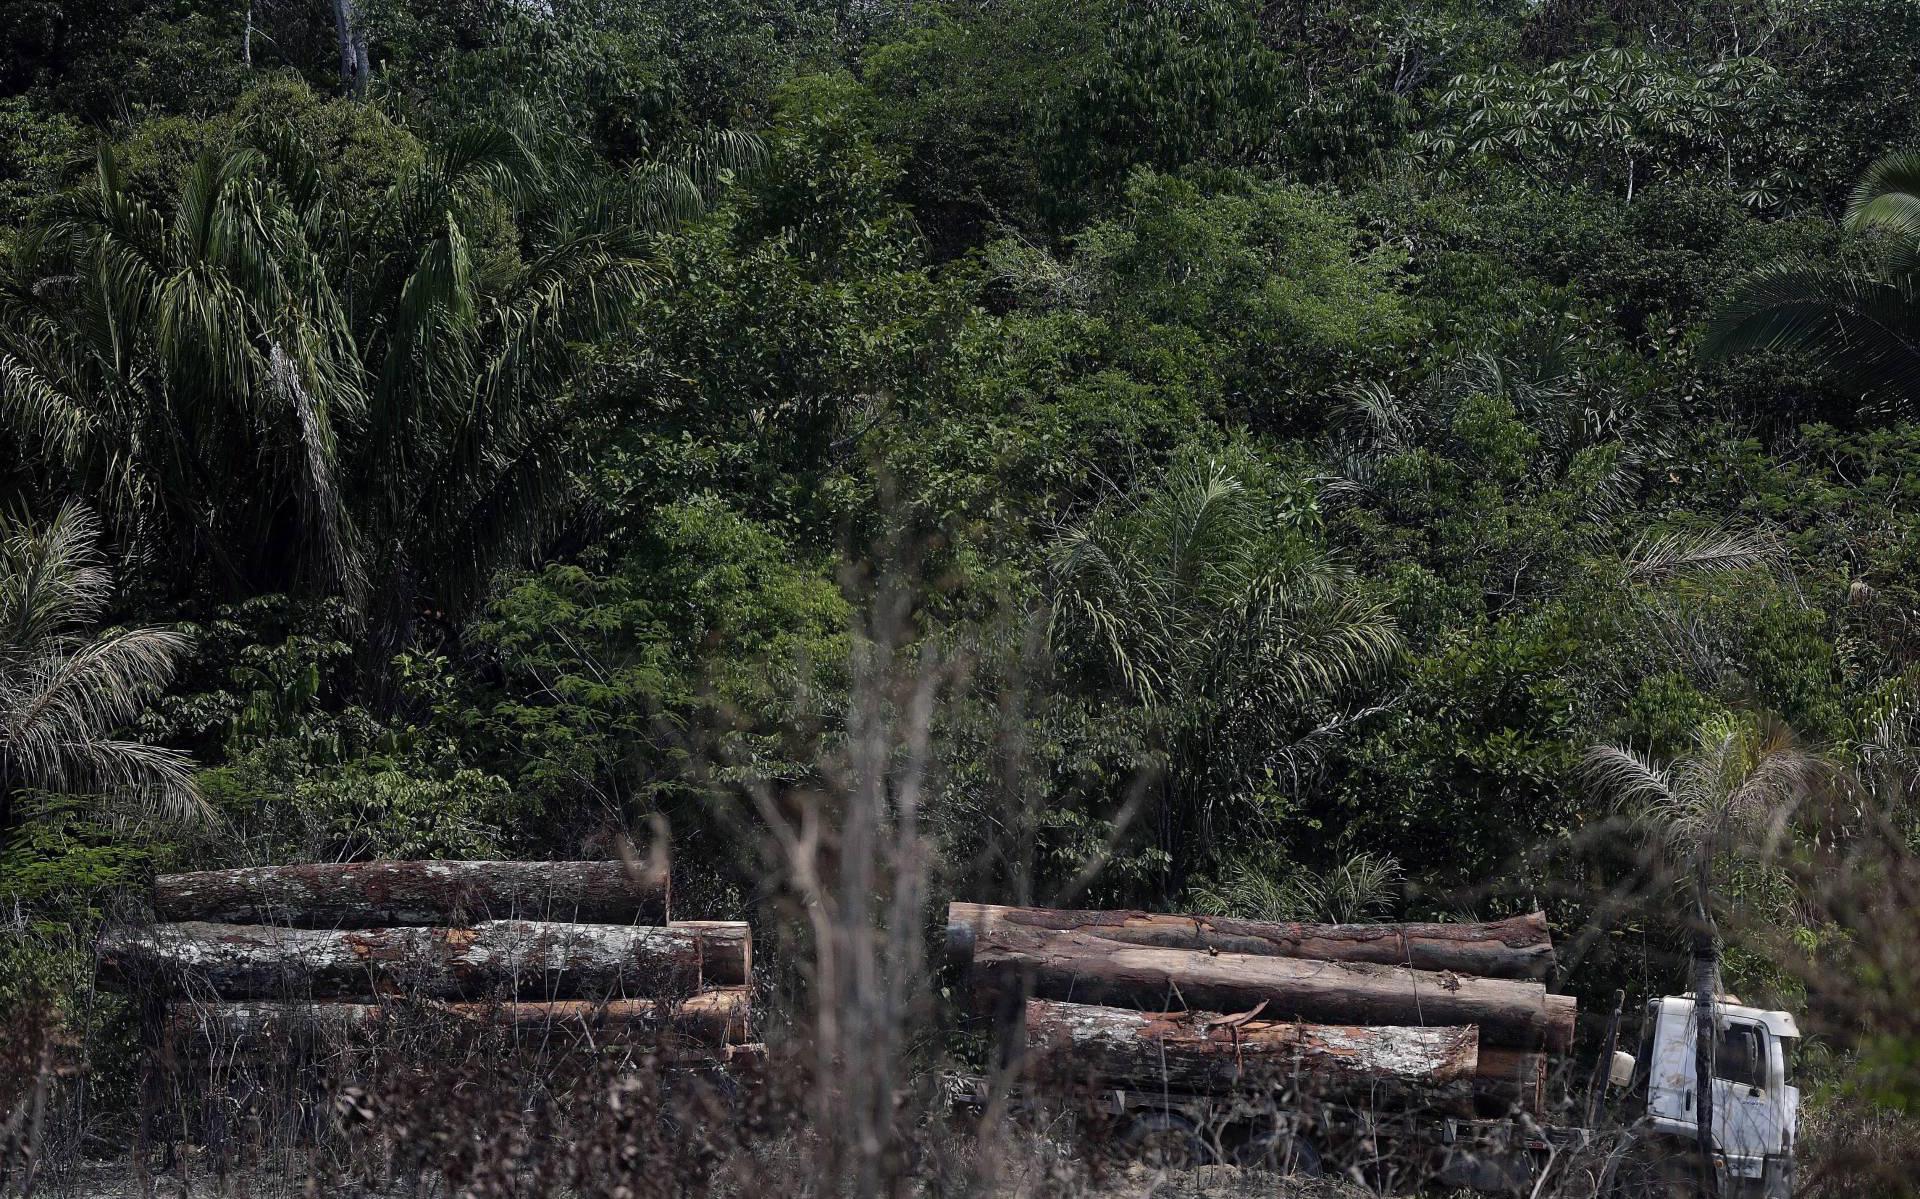 Meer illegale kap in tropisch regenwoud door coronacrisis